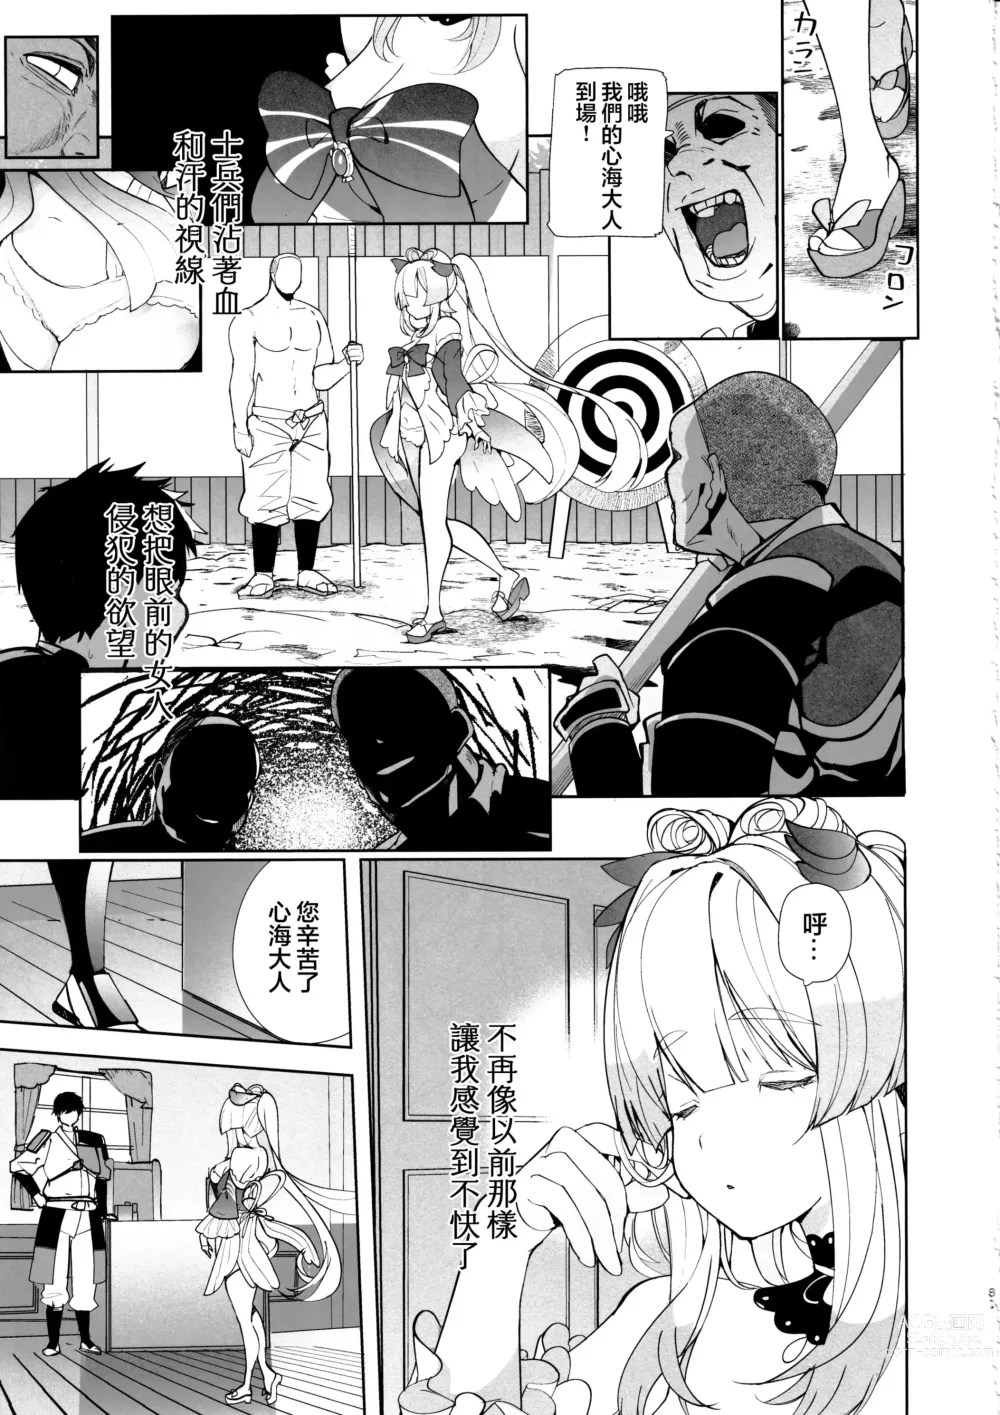 Page 31 of doujinshi Kaigi Shima no Himitsu no Heya